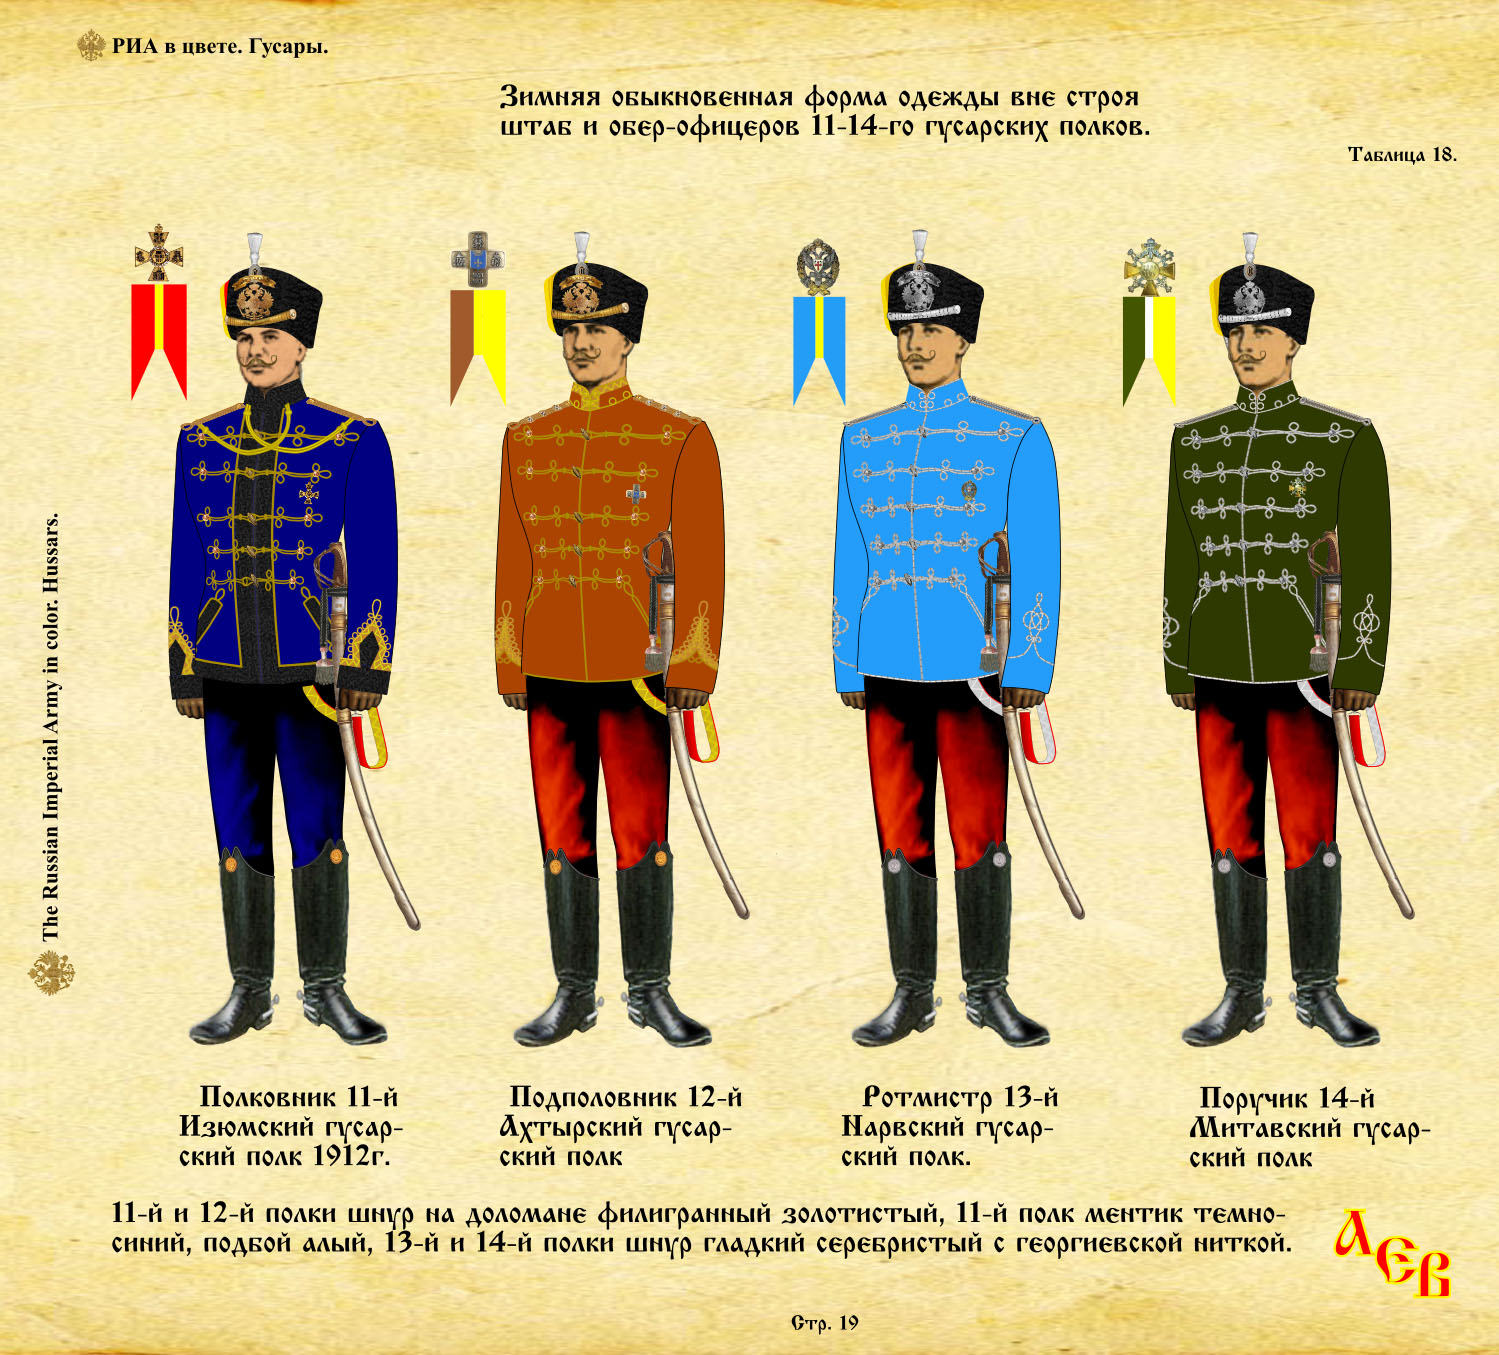 список полков императорской армии